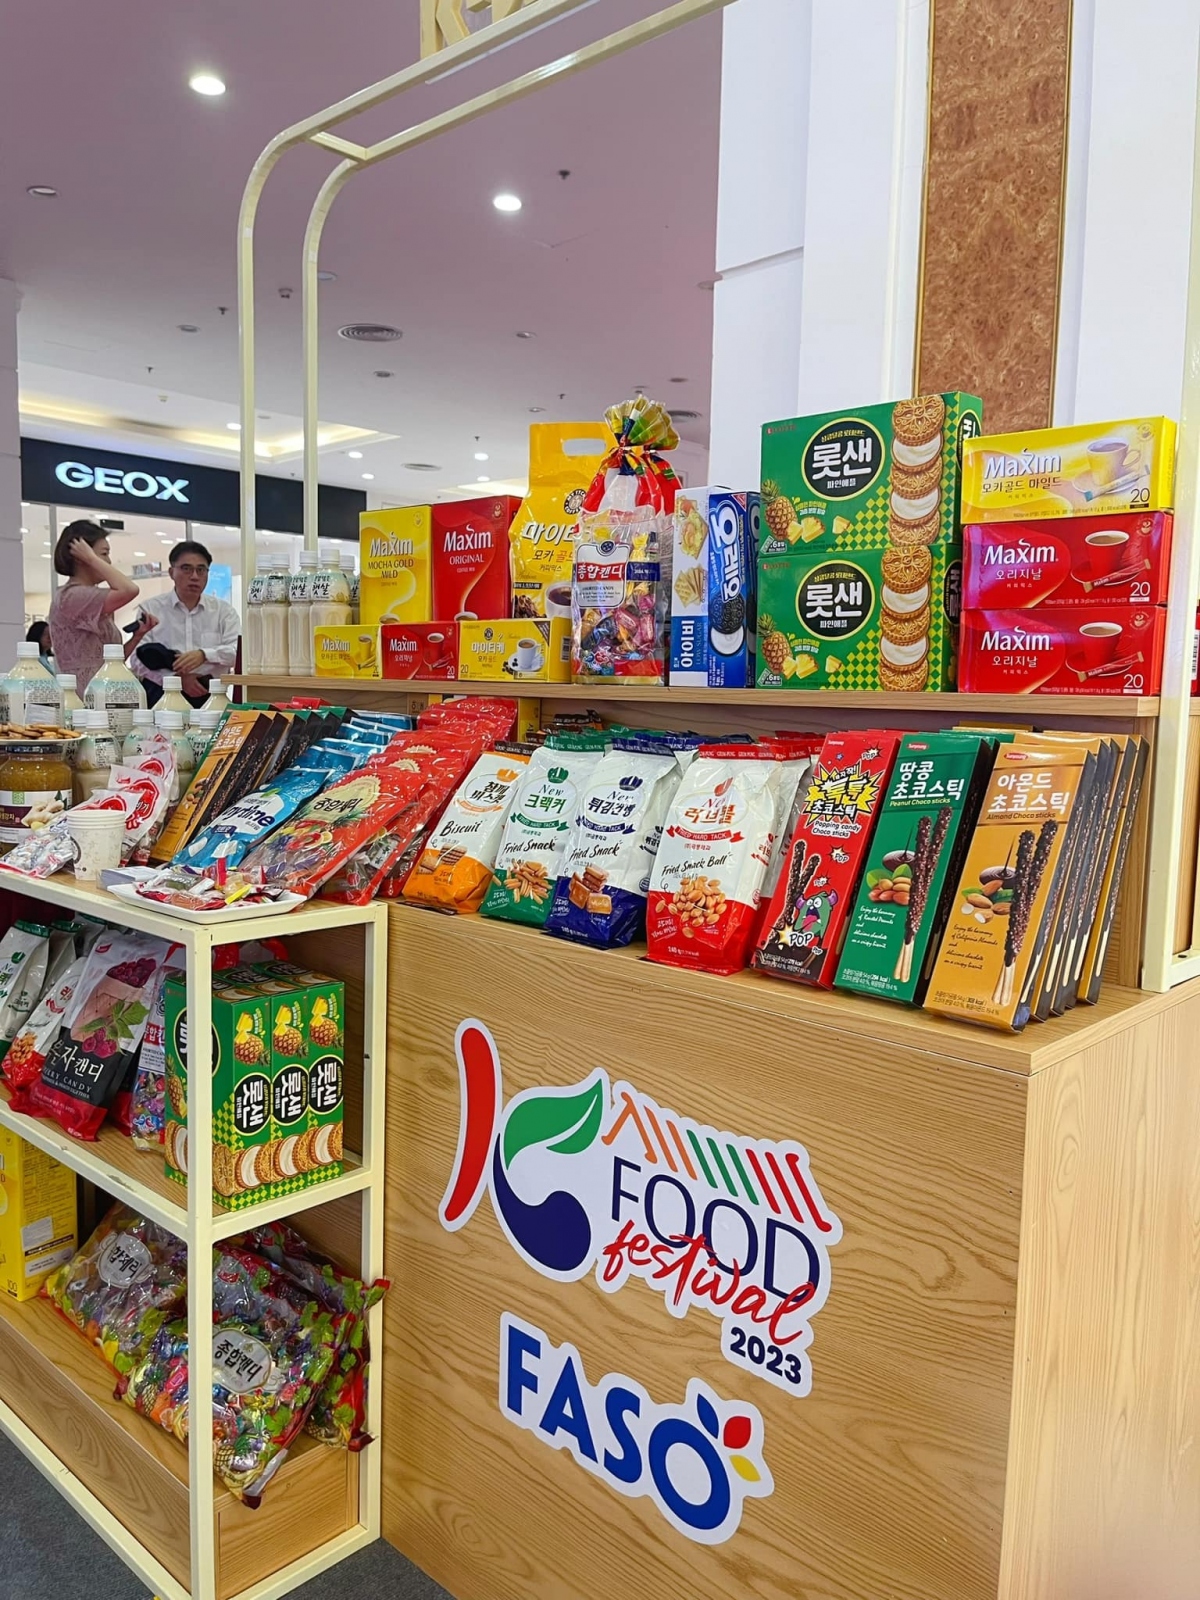 Gian hàng K-Food giới thiệu để người tiêu dùng các sản phẩm Hàn Quốc hấp dẫn - Ảnh: Kim Nhung